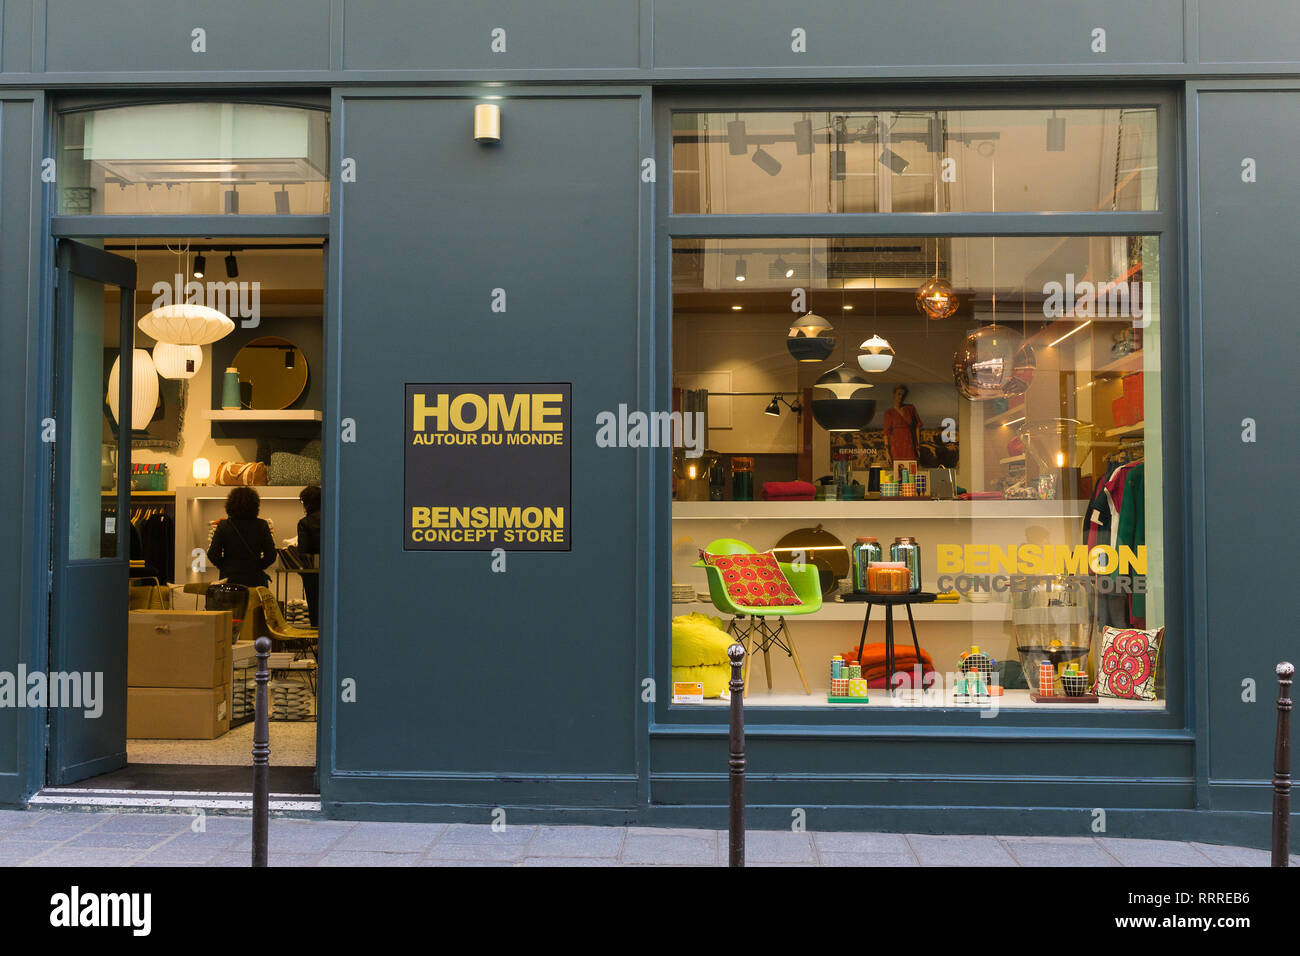 Bensimon Home Autour Du Monde - concept store in Marais district of Paris,  France Stock Photo - Alamy